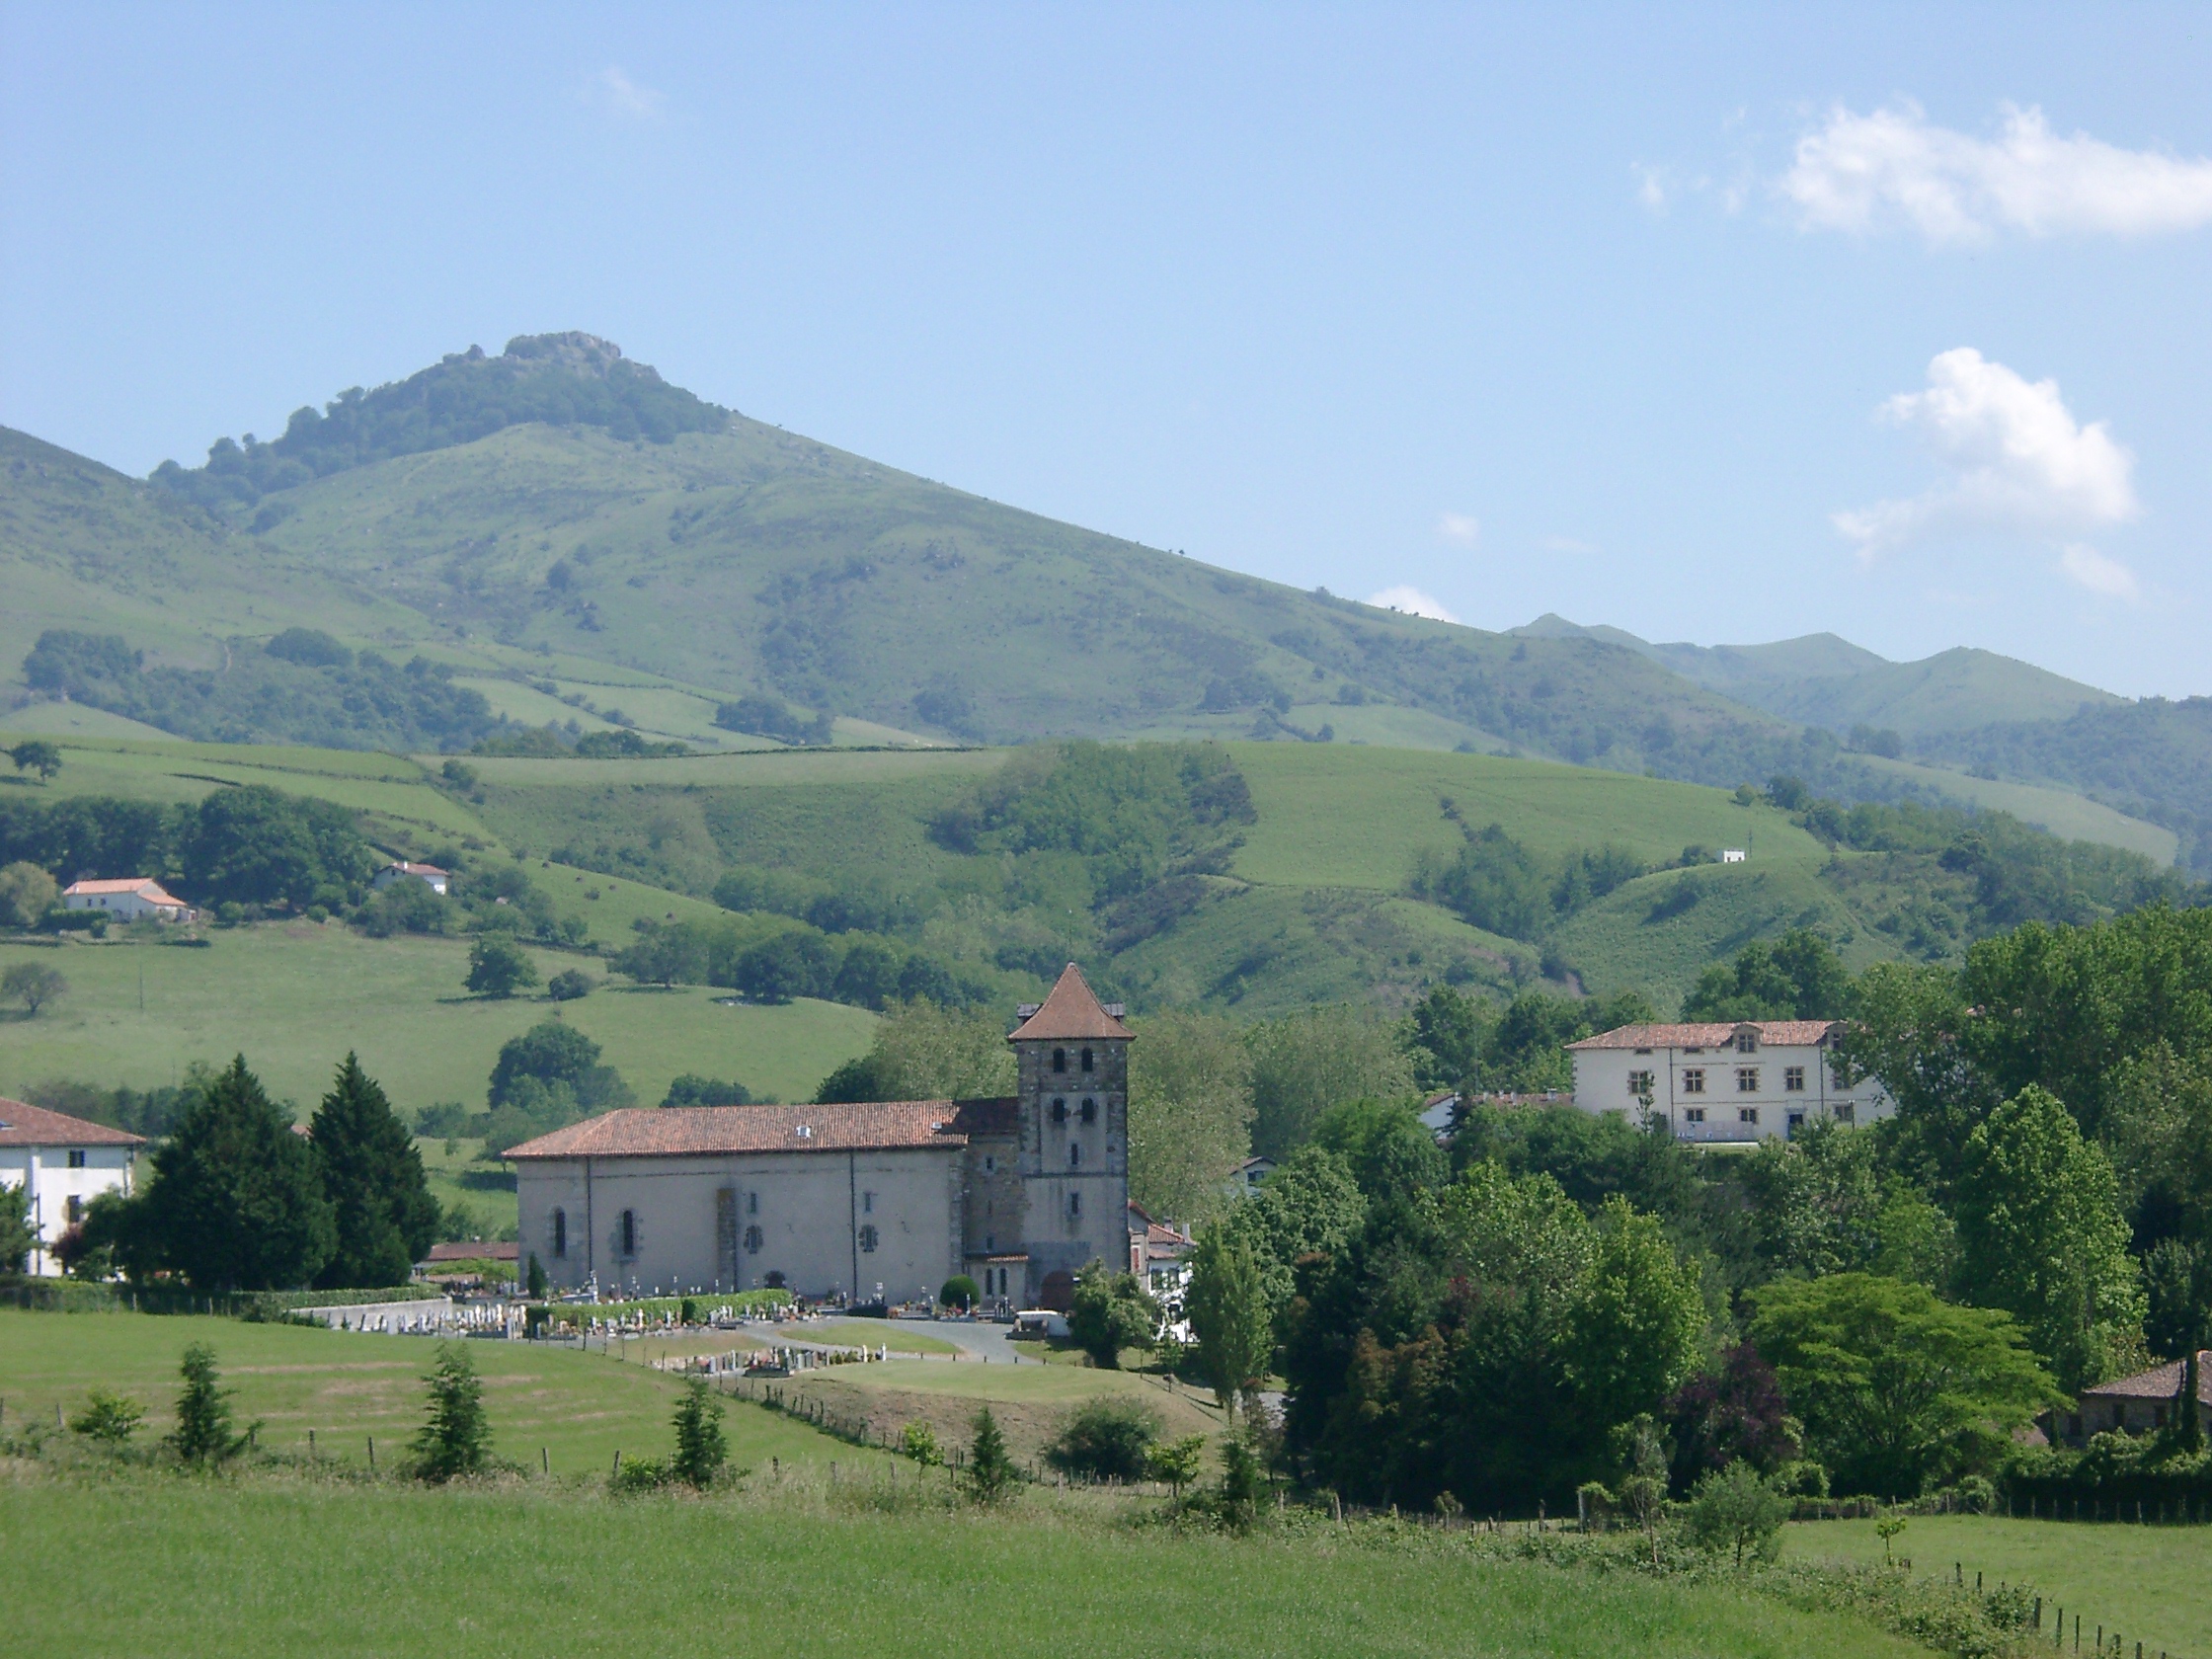 Le village d'Espelette, au pied du Mondarrain